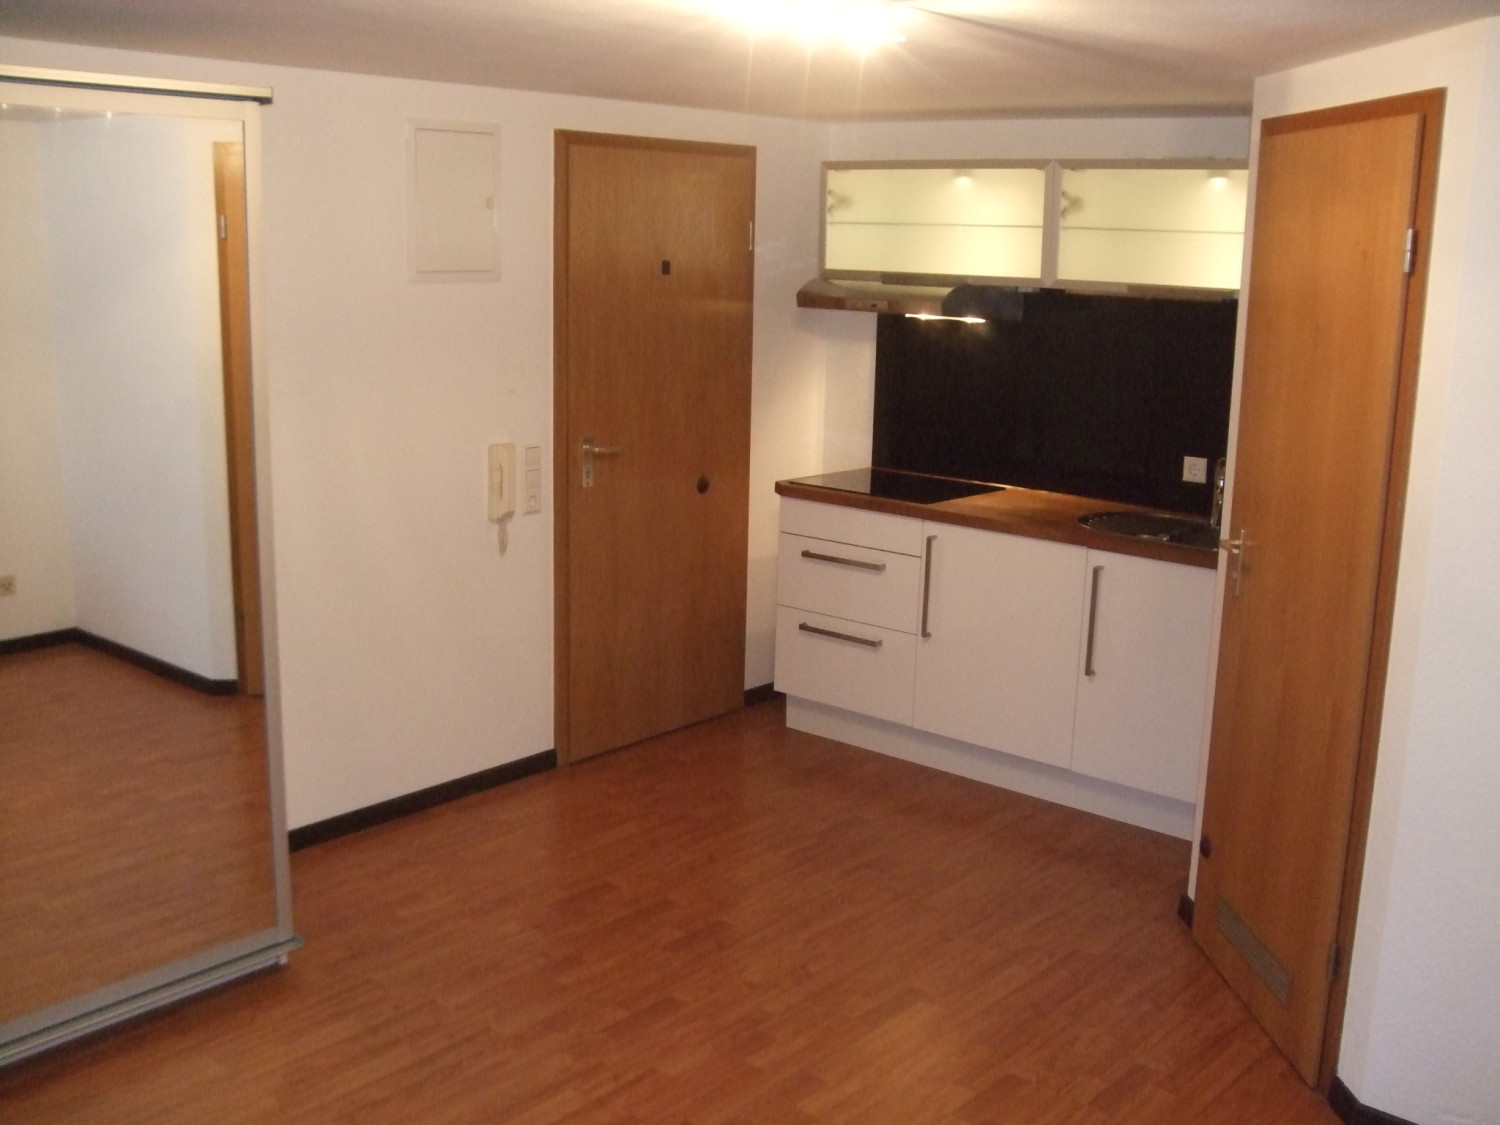 1-Zimmer Appartement in schöner Wohnlage, Stuttgart-Heumaden, Stadtbahn-Nähe